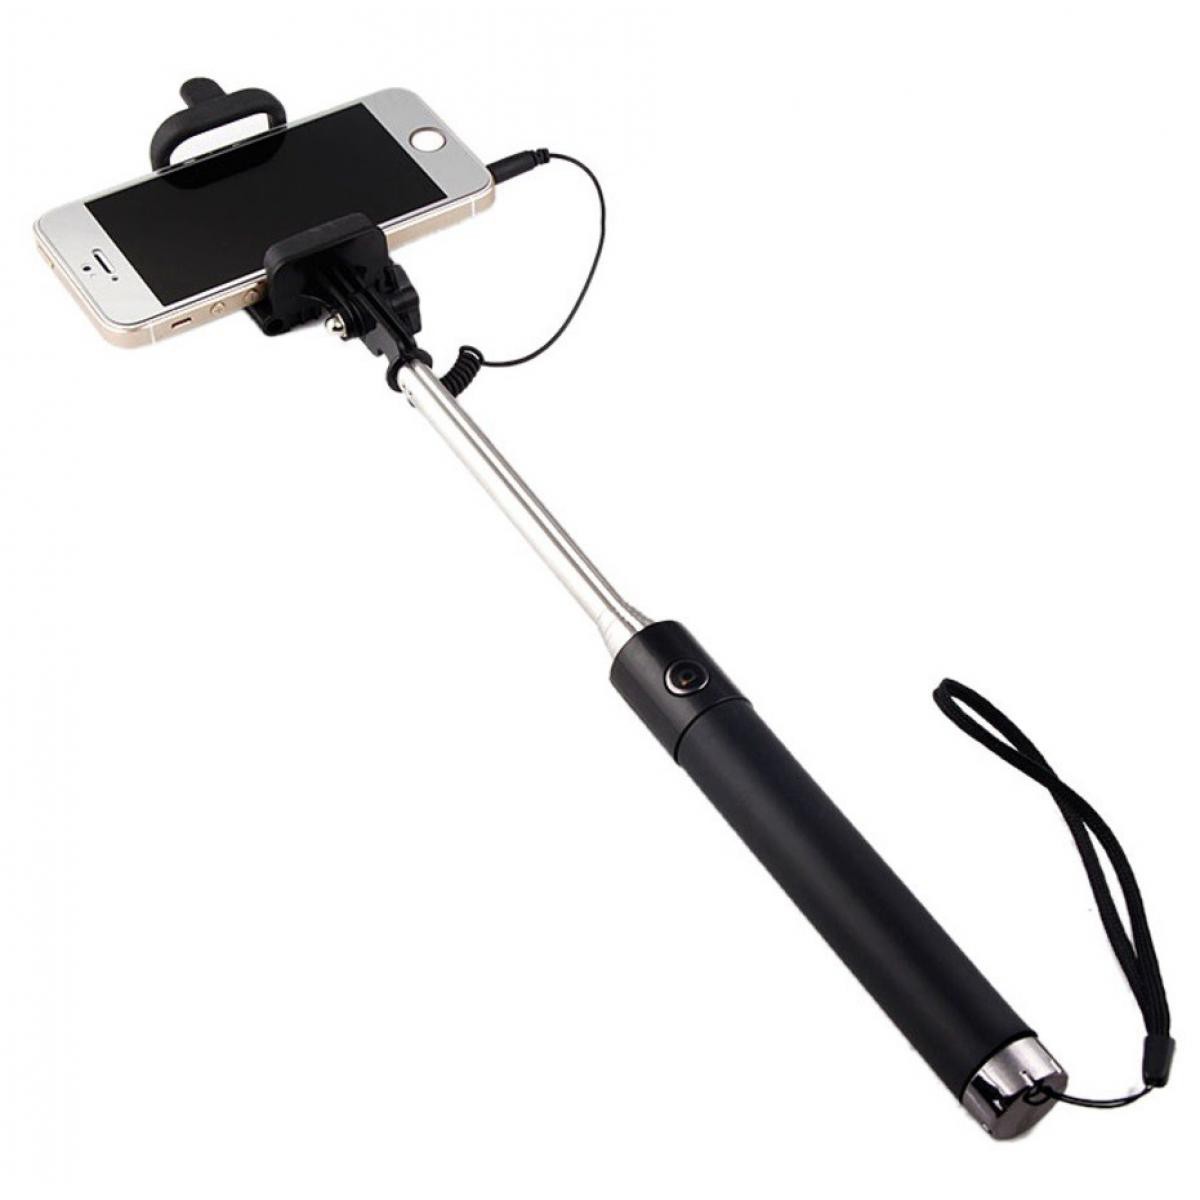 Shot - Perche Selfie Metal pour "XIAOMI Redmi 9" Smartphone avec Cable Jack Selfie Stick Android IOS Reglable Bouton Photo (NOIR) - Autres accessoires smartphone